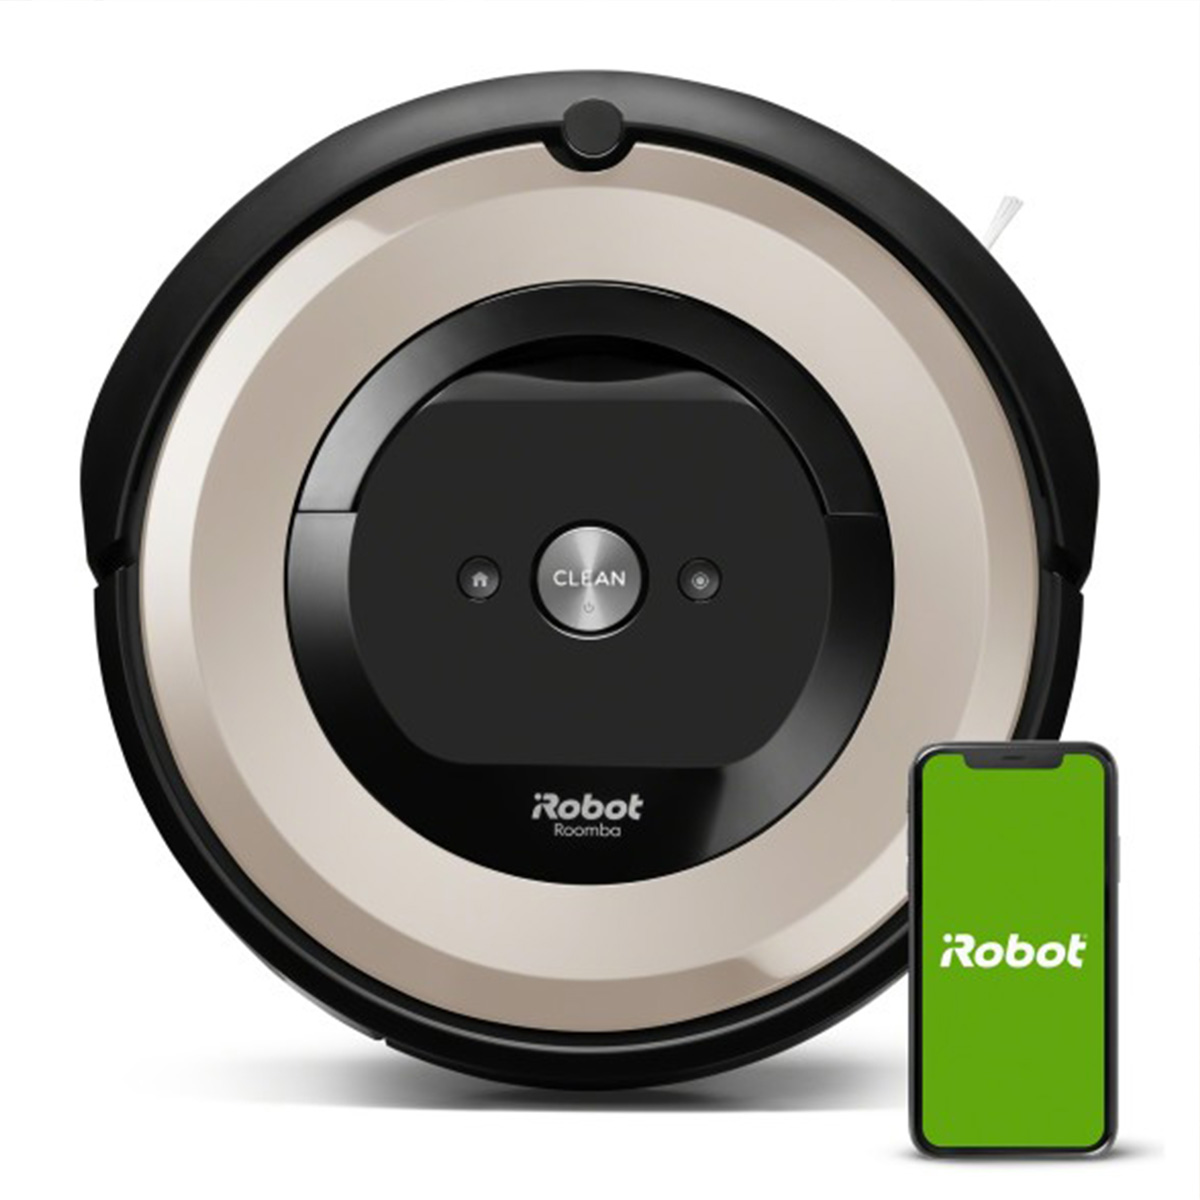 Robot Aspiradora iRobot Roomba e517 con Conexión Wi-Fi